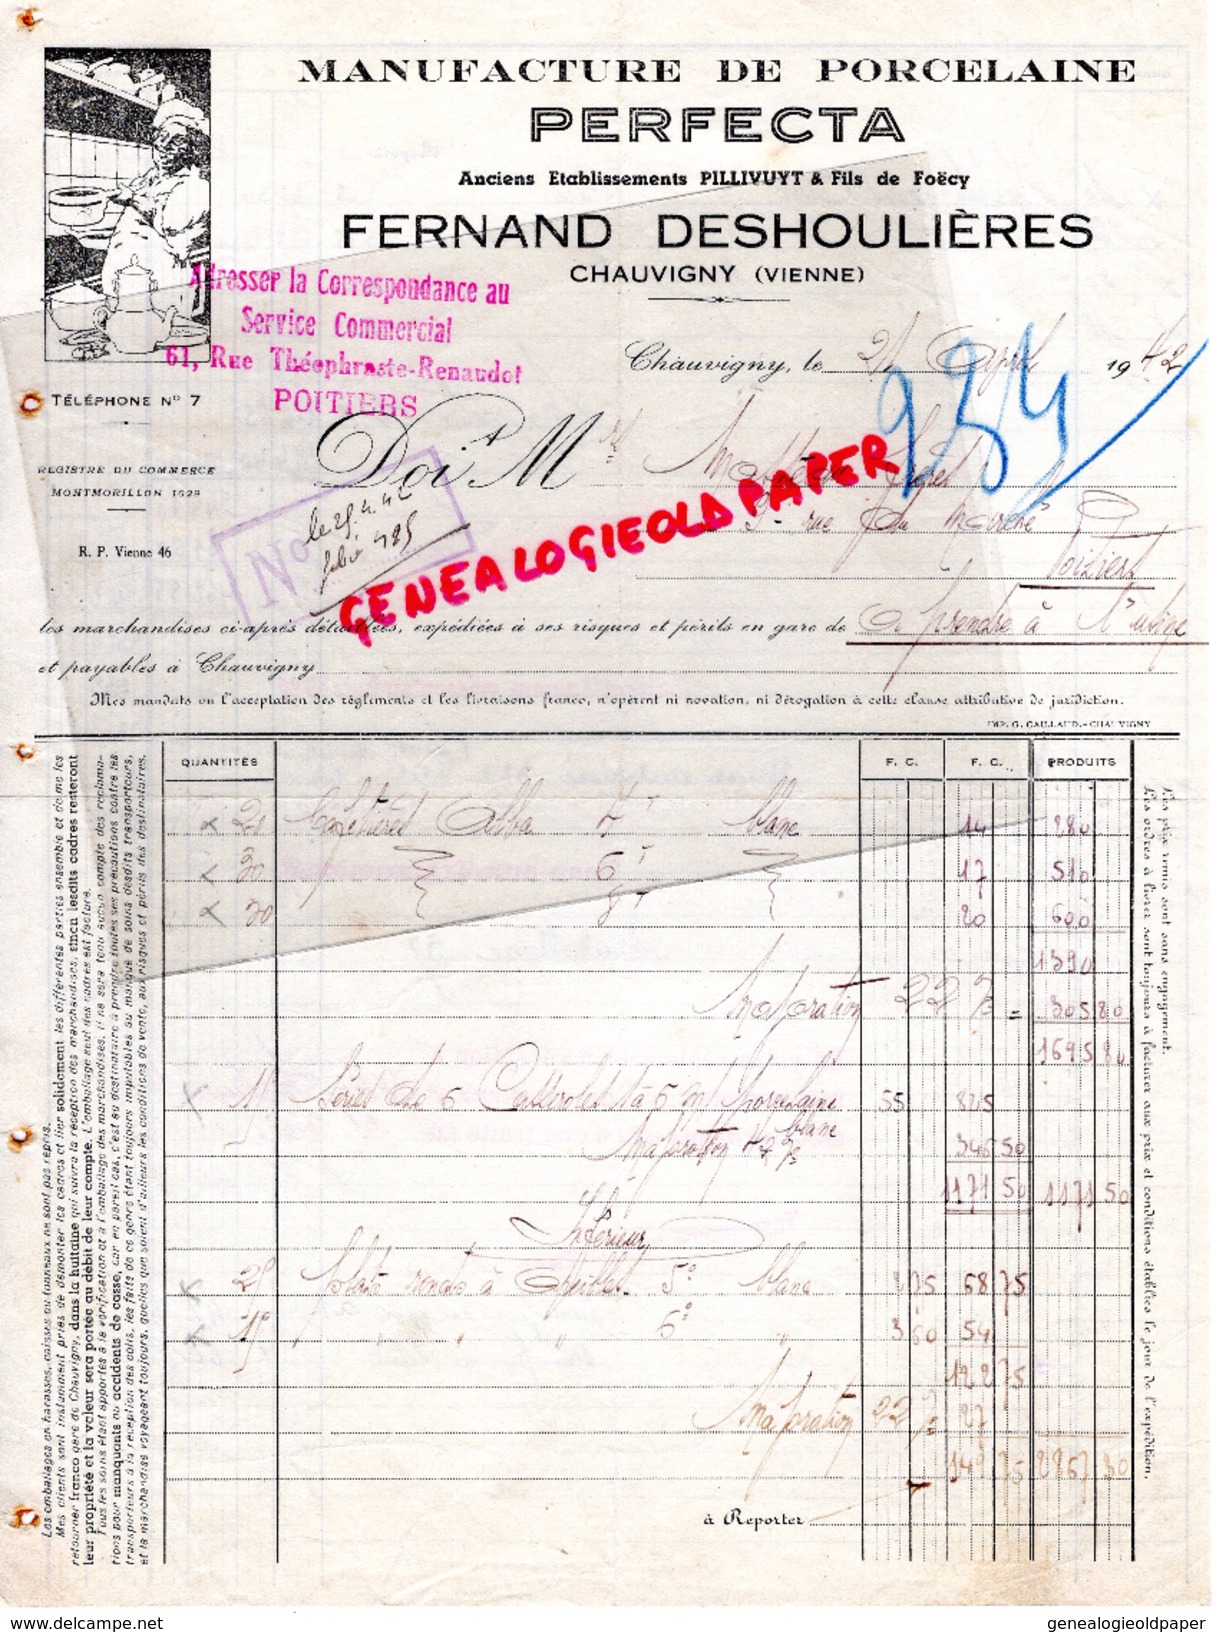 86- CHAUVIGNY- FACTURE FERNAND DESHOULIERES- MANUFACTURE PORCELAINE- PERFECTA- PILLIVUYT & FILS DE FOECY- 1942 - Old Professions